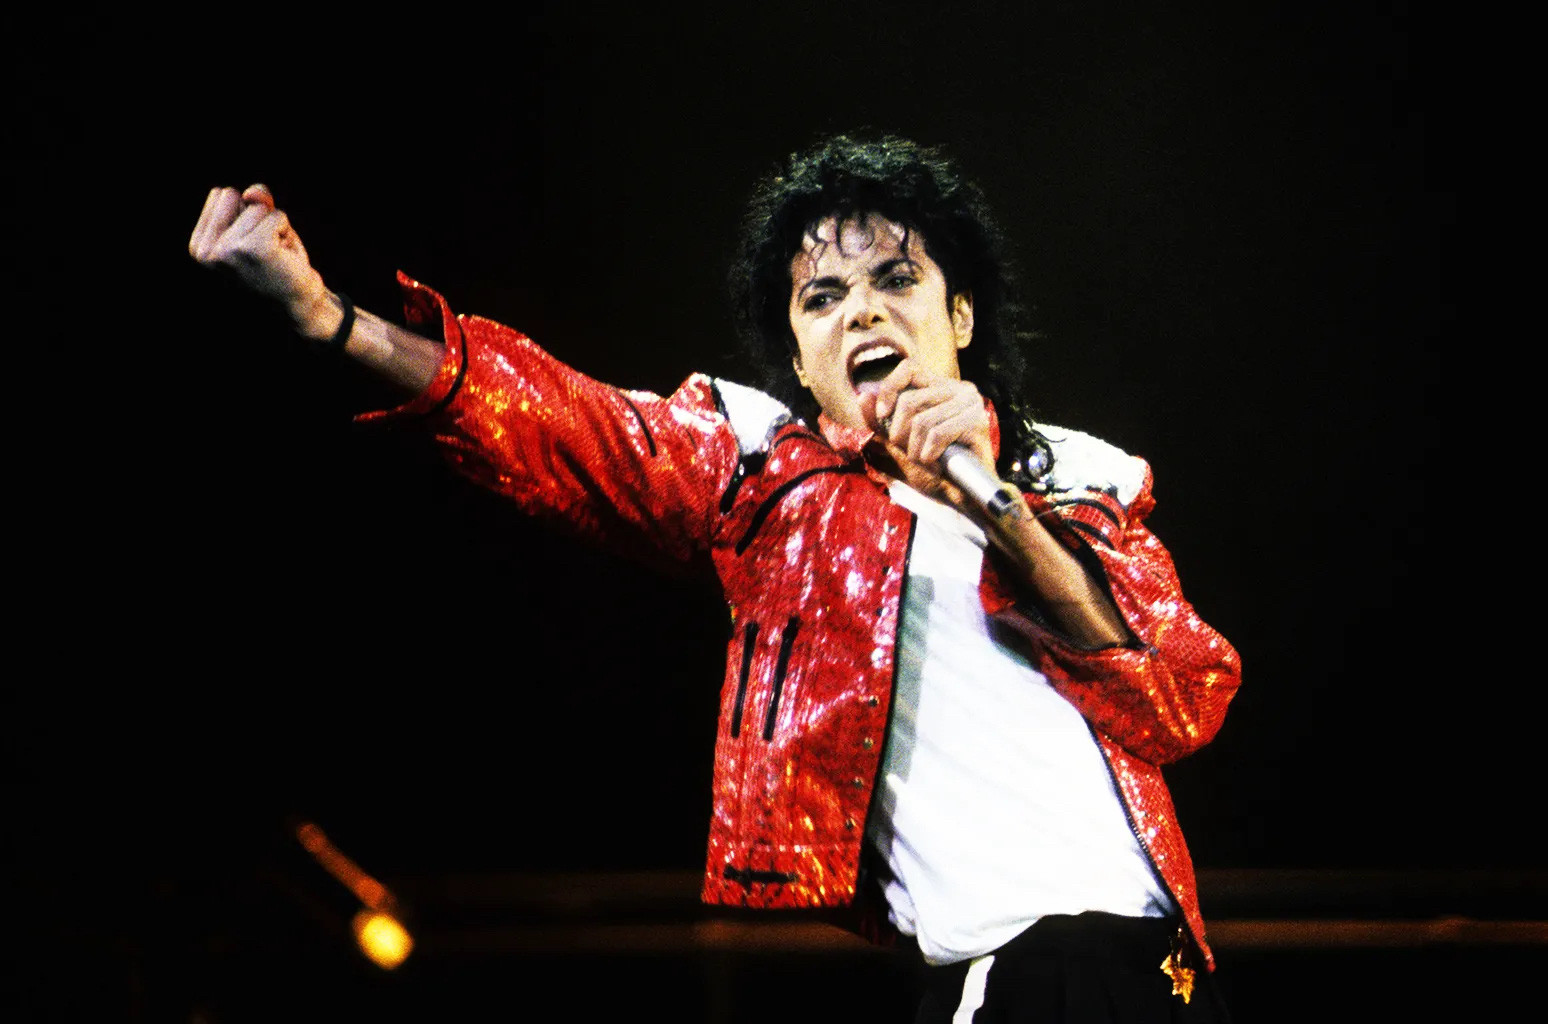 Ngôi vua của Michael Jackson trong nhạc pop khó với tới vì đẳng cấp nghệ thuật vượt trội - Ảnh: AP